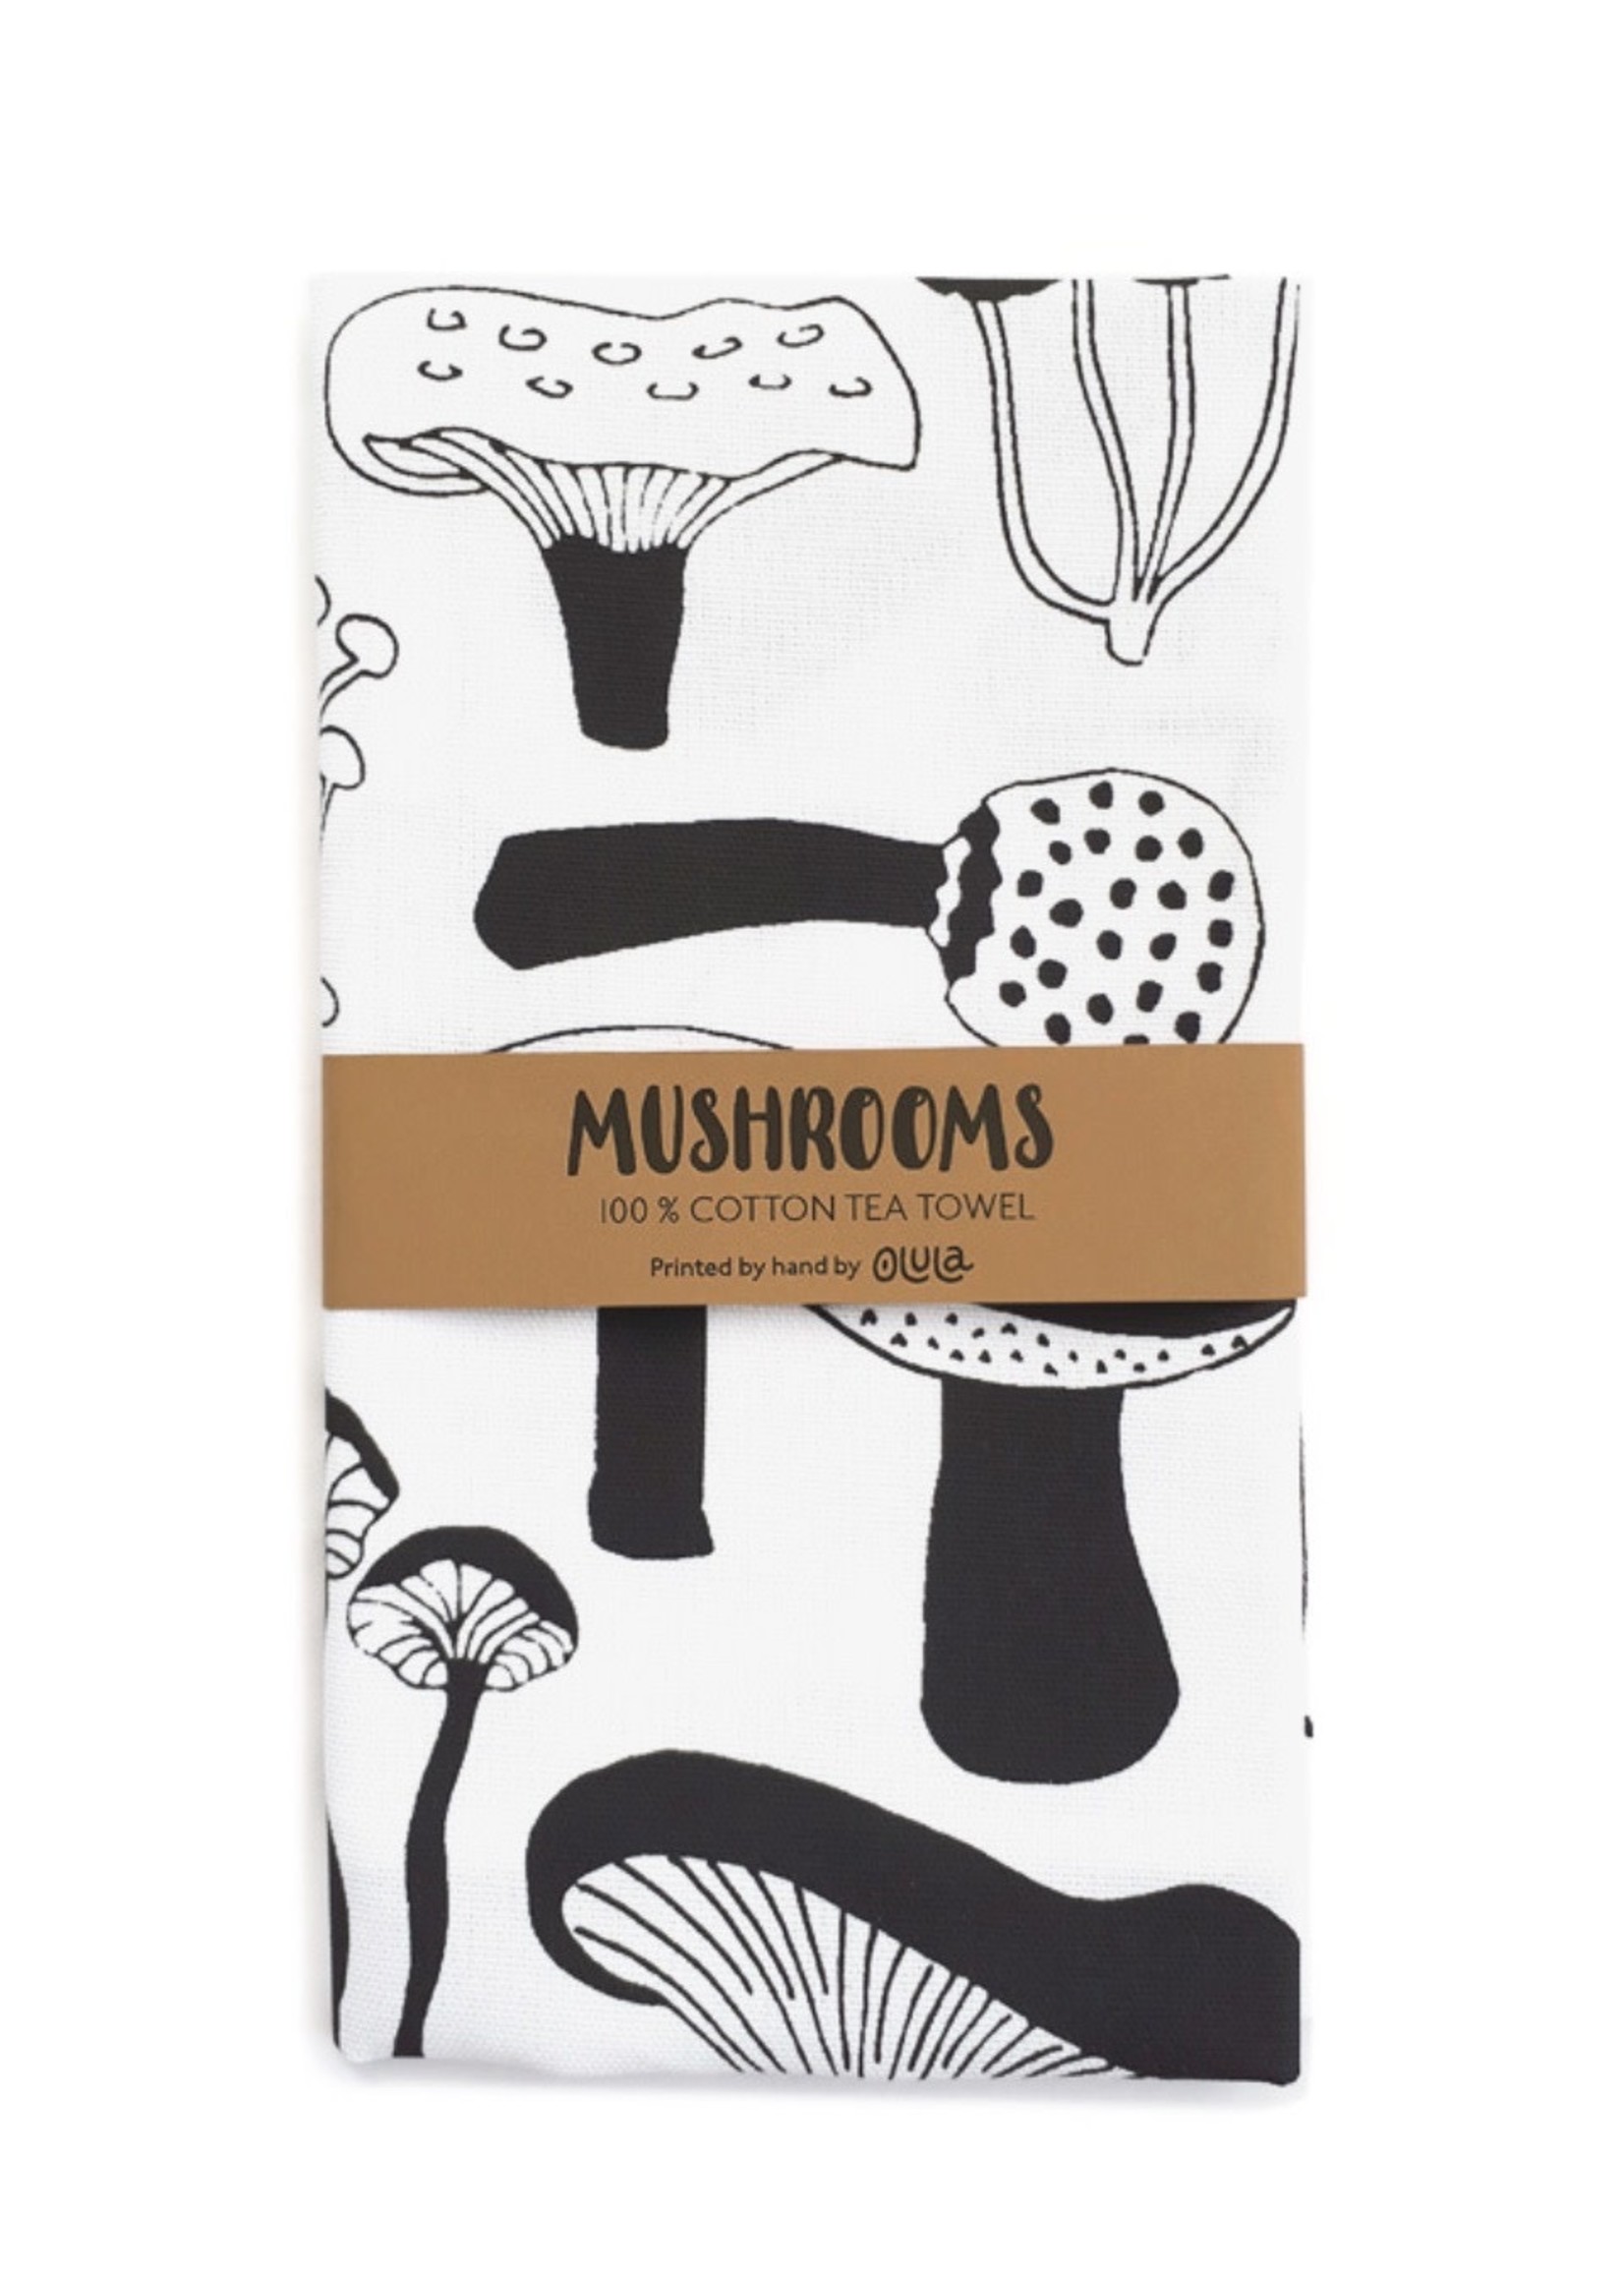 Olula "Mushrooms" Tea Towel by Olula